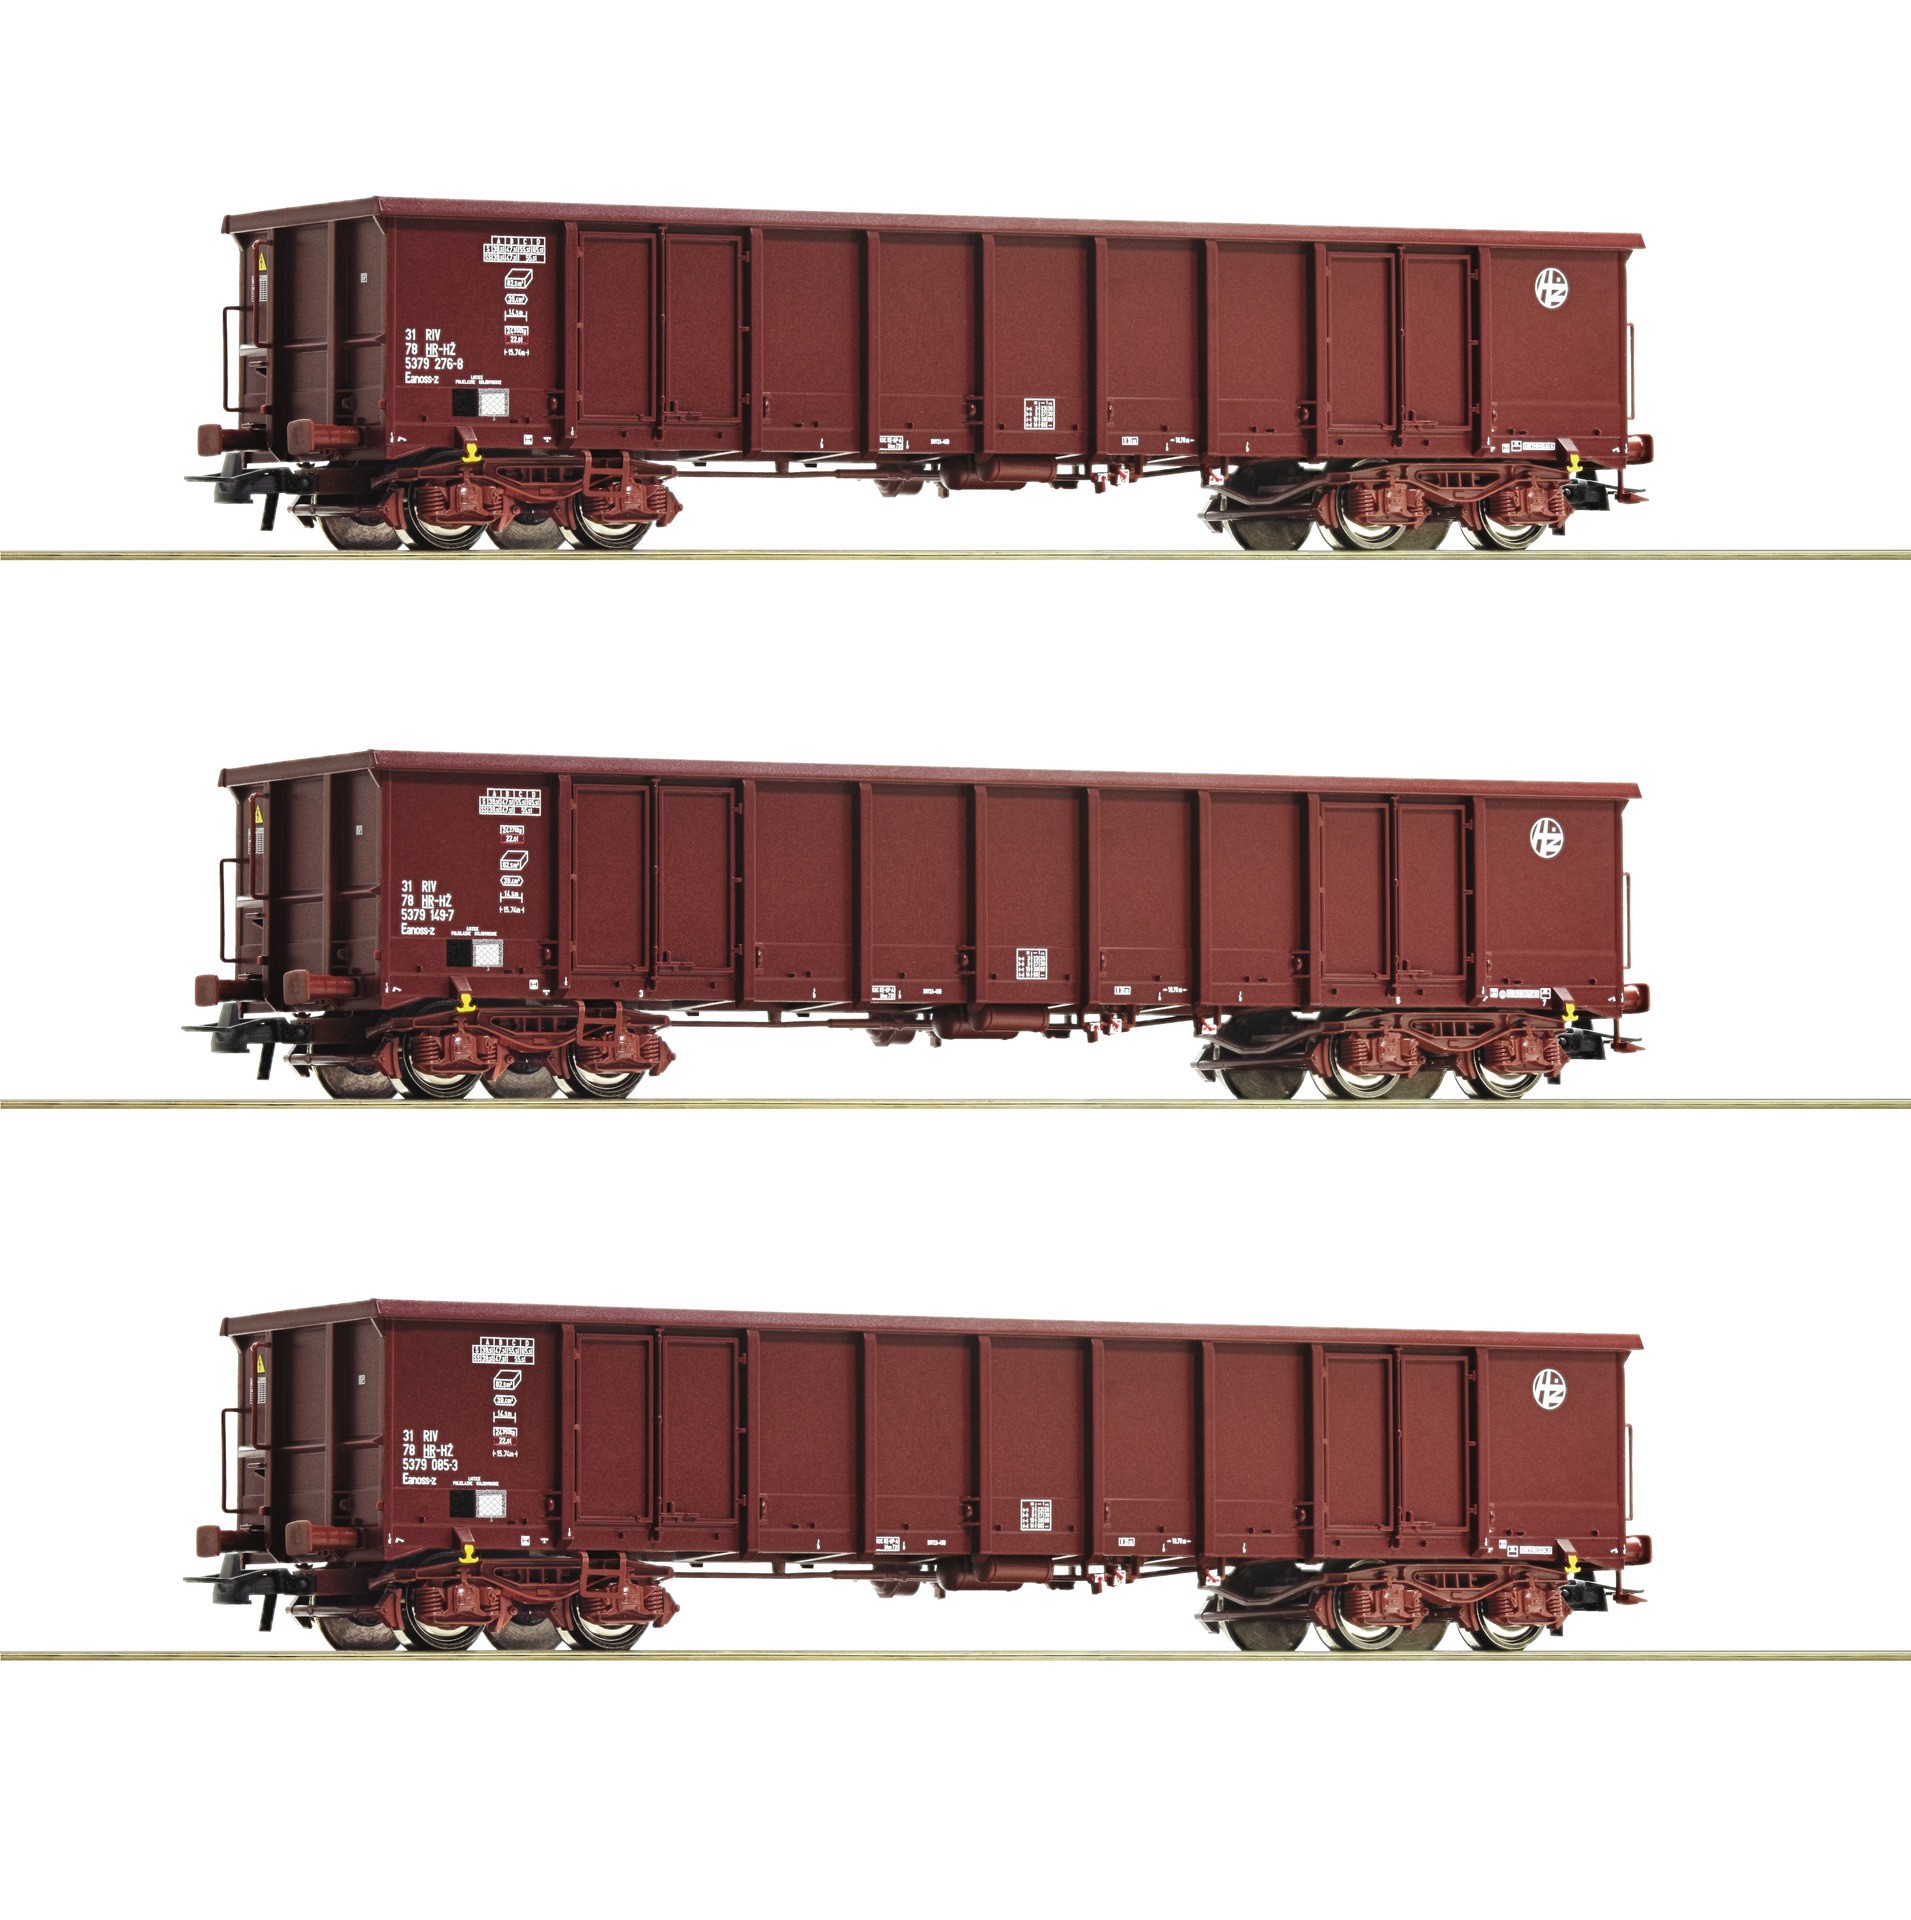  Roco-Fleischmann Roco-Fleischmann 76091-H0 - Trains miniatures : maté